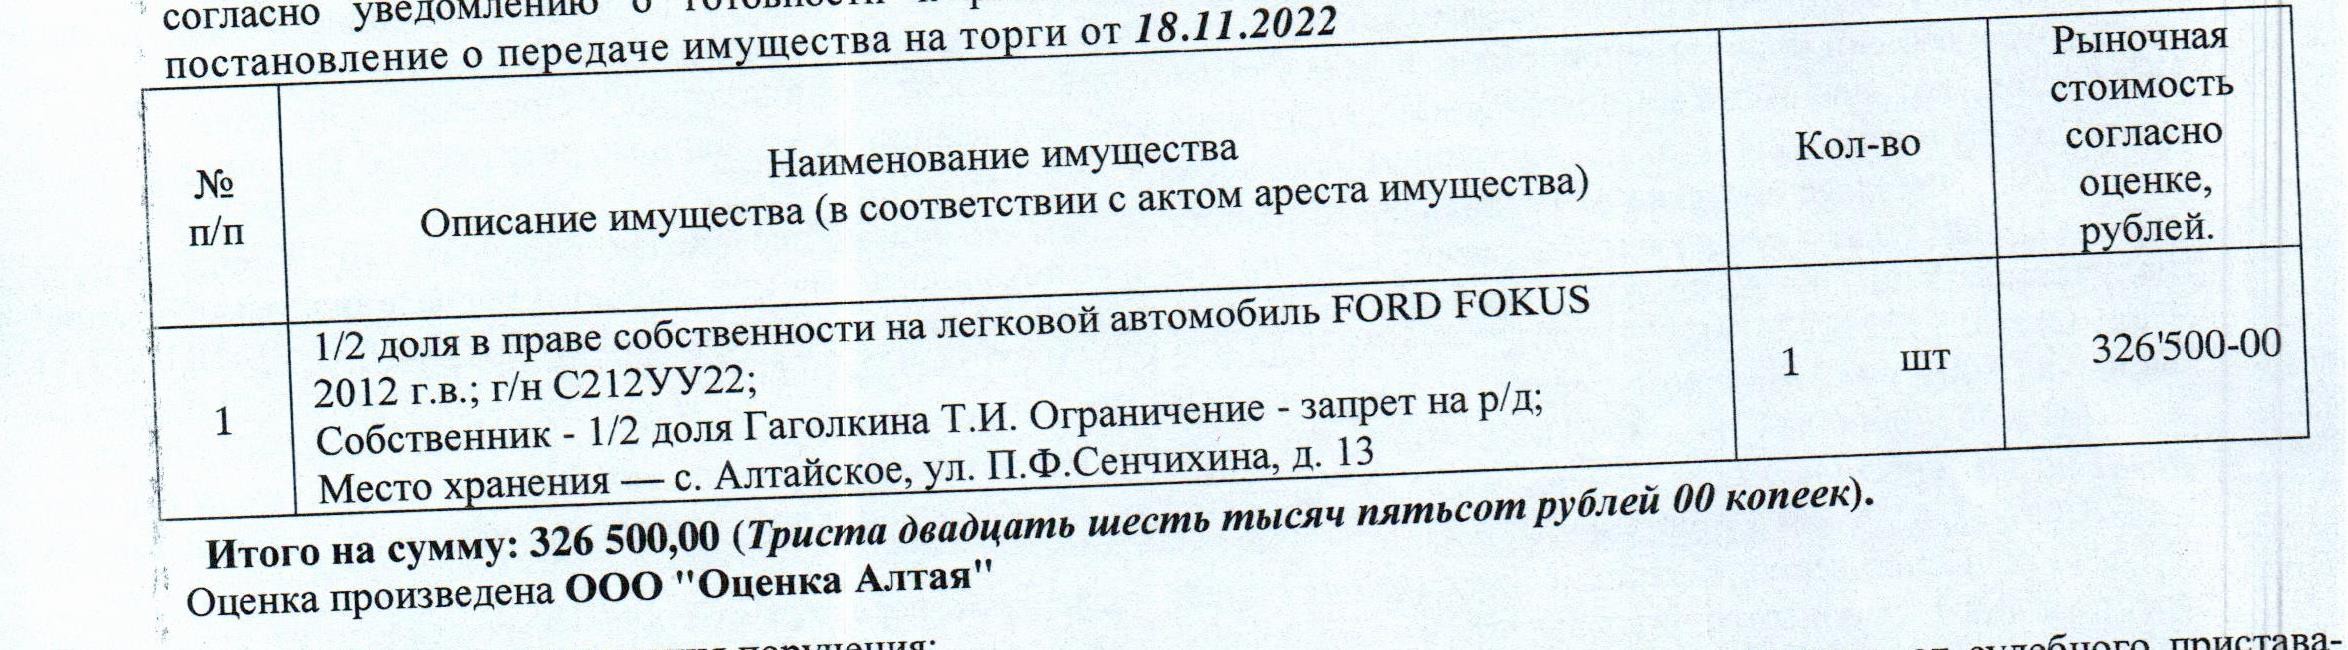 Лот№12 1/2 доля в праве собственности на автомобиль FORD FOKUS, 2012 г.в., г/н С212УУ22, цвет: темно